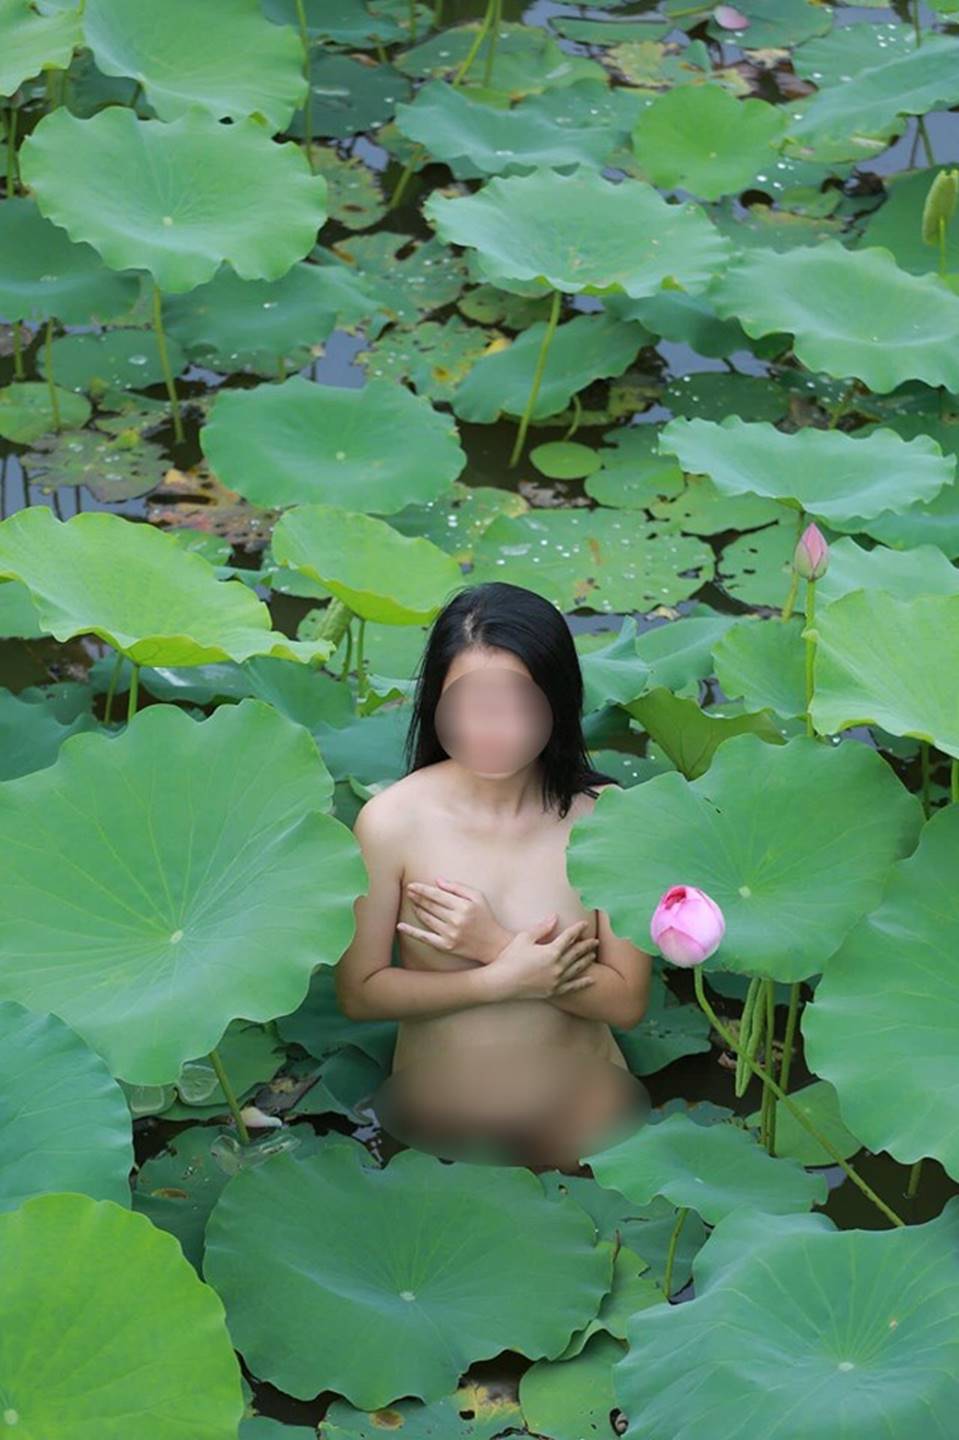 Chị Gái Nude Khoe Thân Dưới Hồ Sen, Chả Thấy Nghệ Thuật Ởđâu | Tin Tức  Online